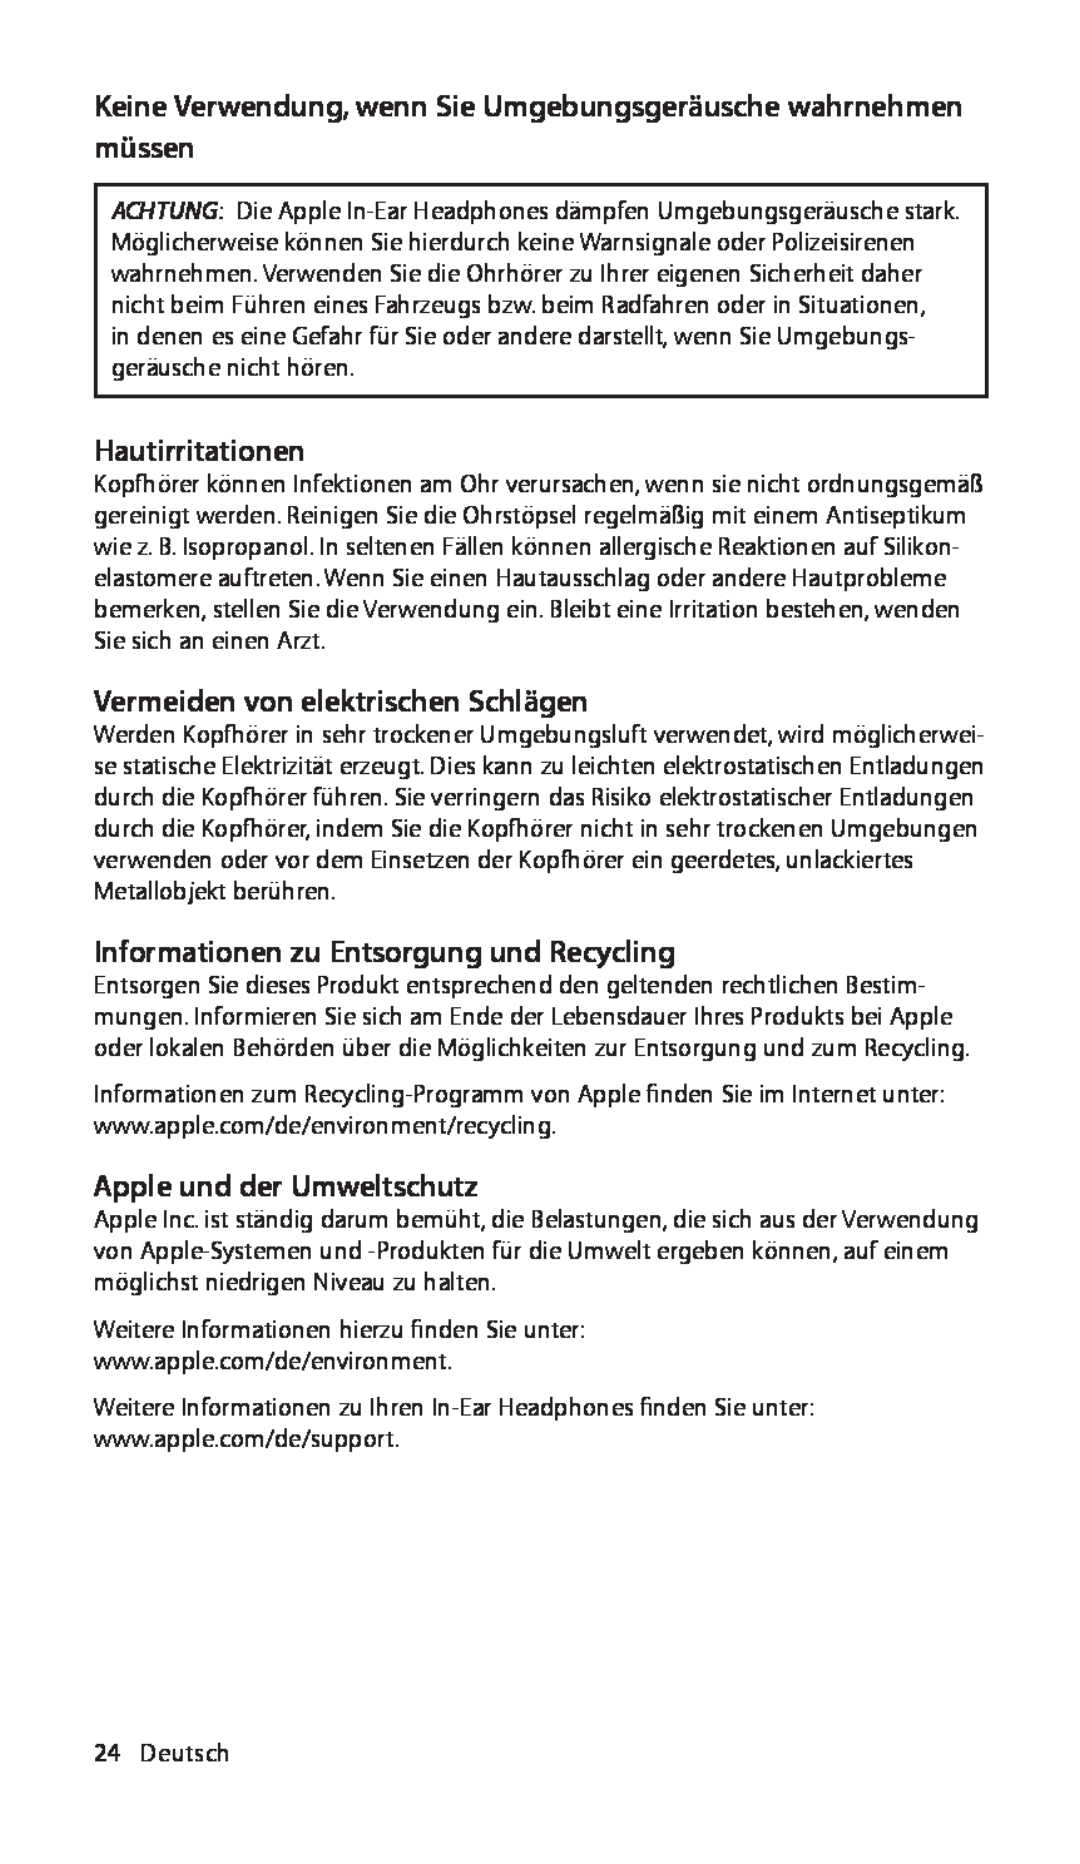 Apple ZM034-4942-A manual Hautirritationen, Vermeiden von elektrischen Schlägen, Informationen zu Entsorgung und Recycling 